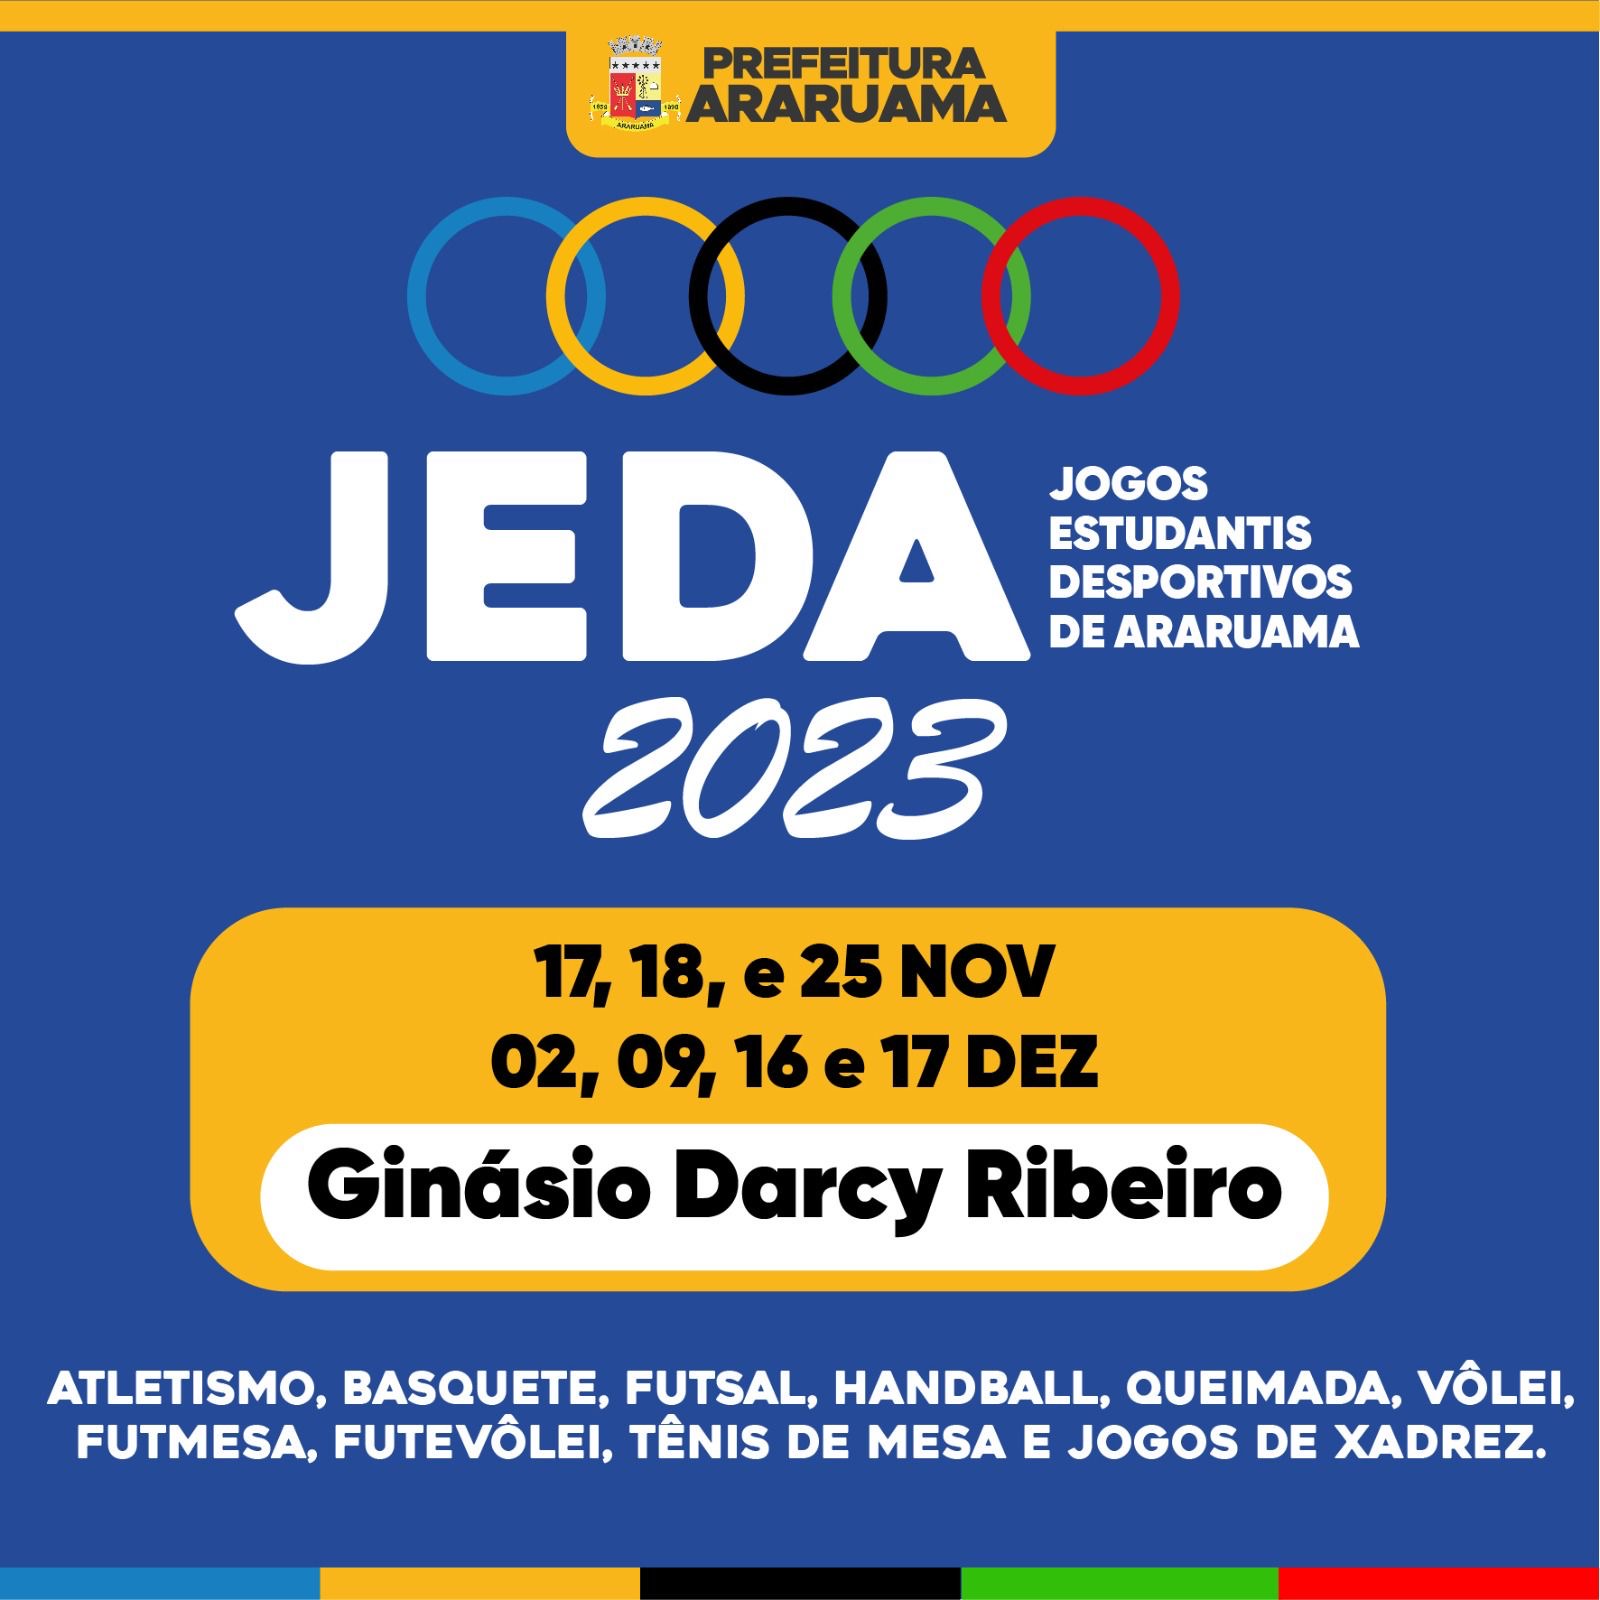 Abertura dos Jogos Estudantis Desportivos de Araruama (JEDA) será nessa sexta-feira